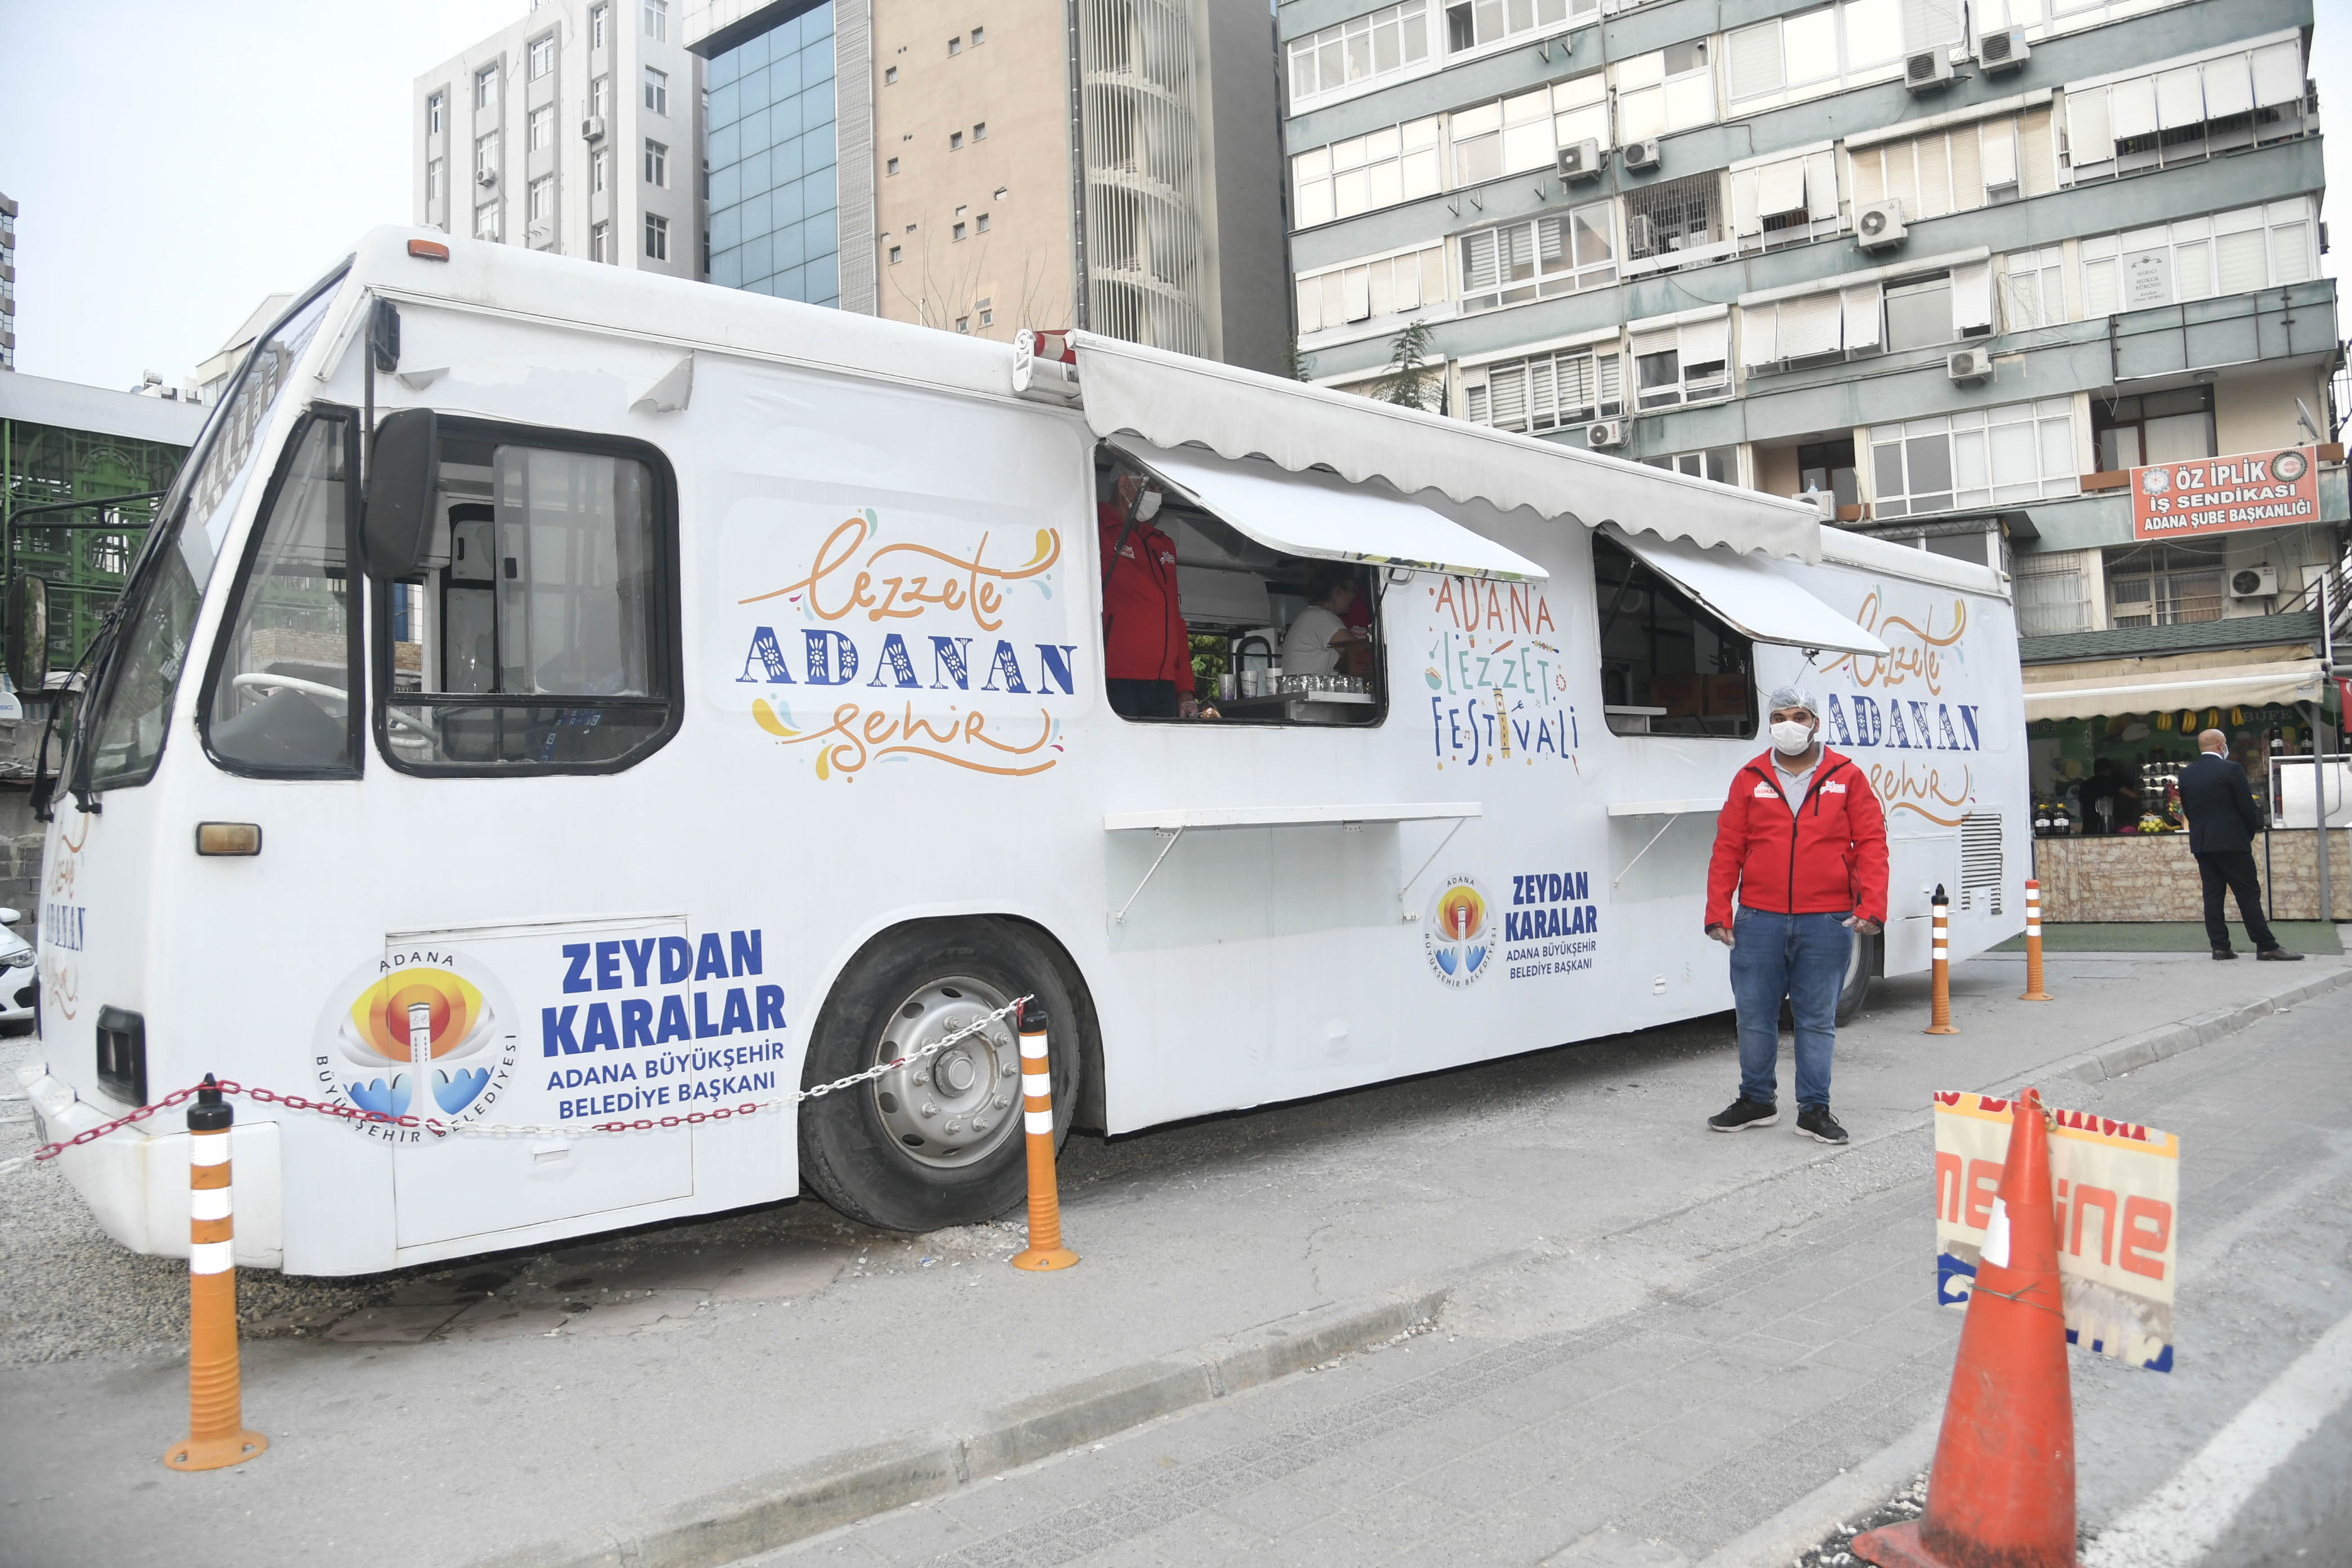 Adana Büyükşehir Belediyesi, Ramazan Ayı’nda iftar saatlerinde şehrin değişik bölgelerinde gerçekleştirdiği çorba dağıtımı ile çeşitli nedenlerden dolayı iftara yetişemeyen vatandaşların orucunu açabilmesini sağlıyor.